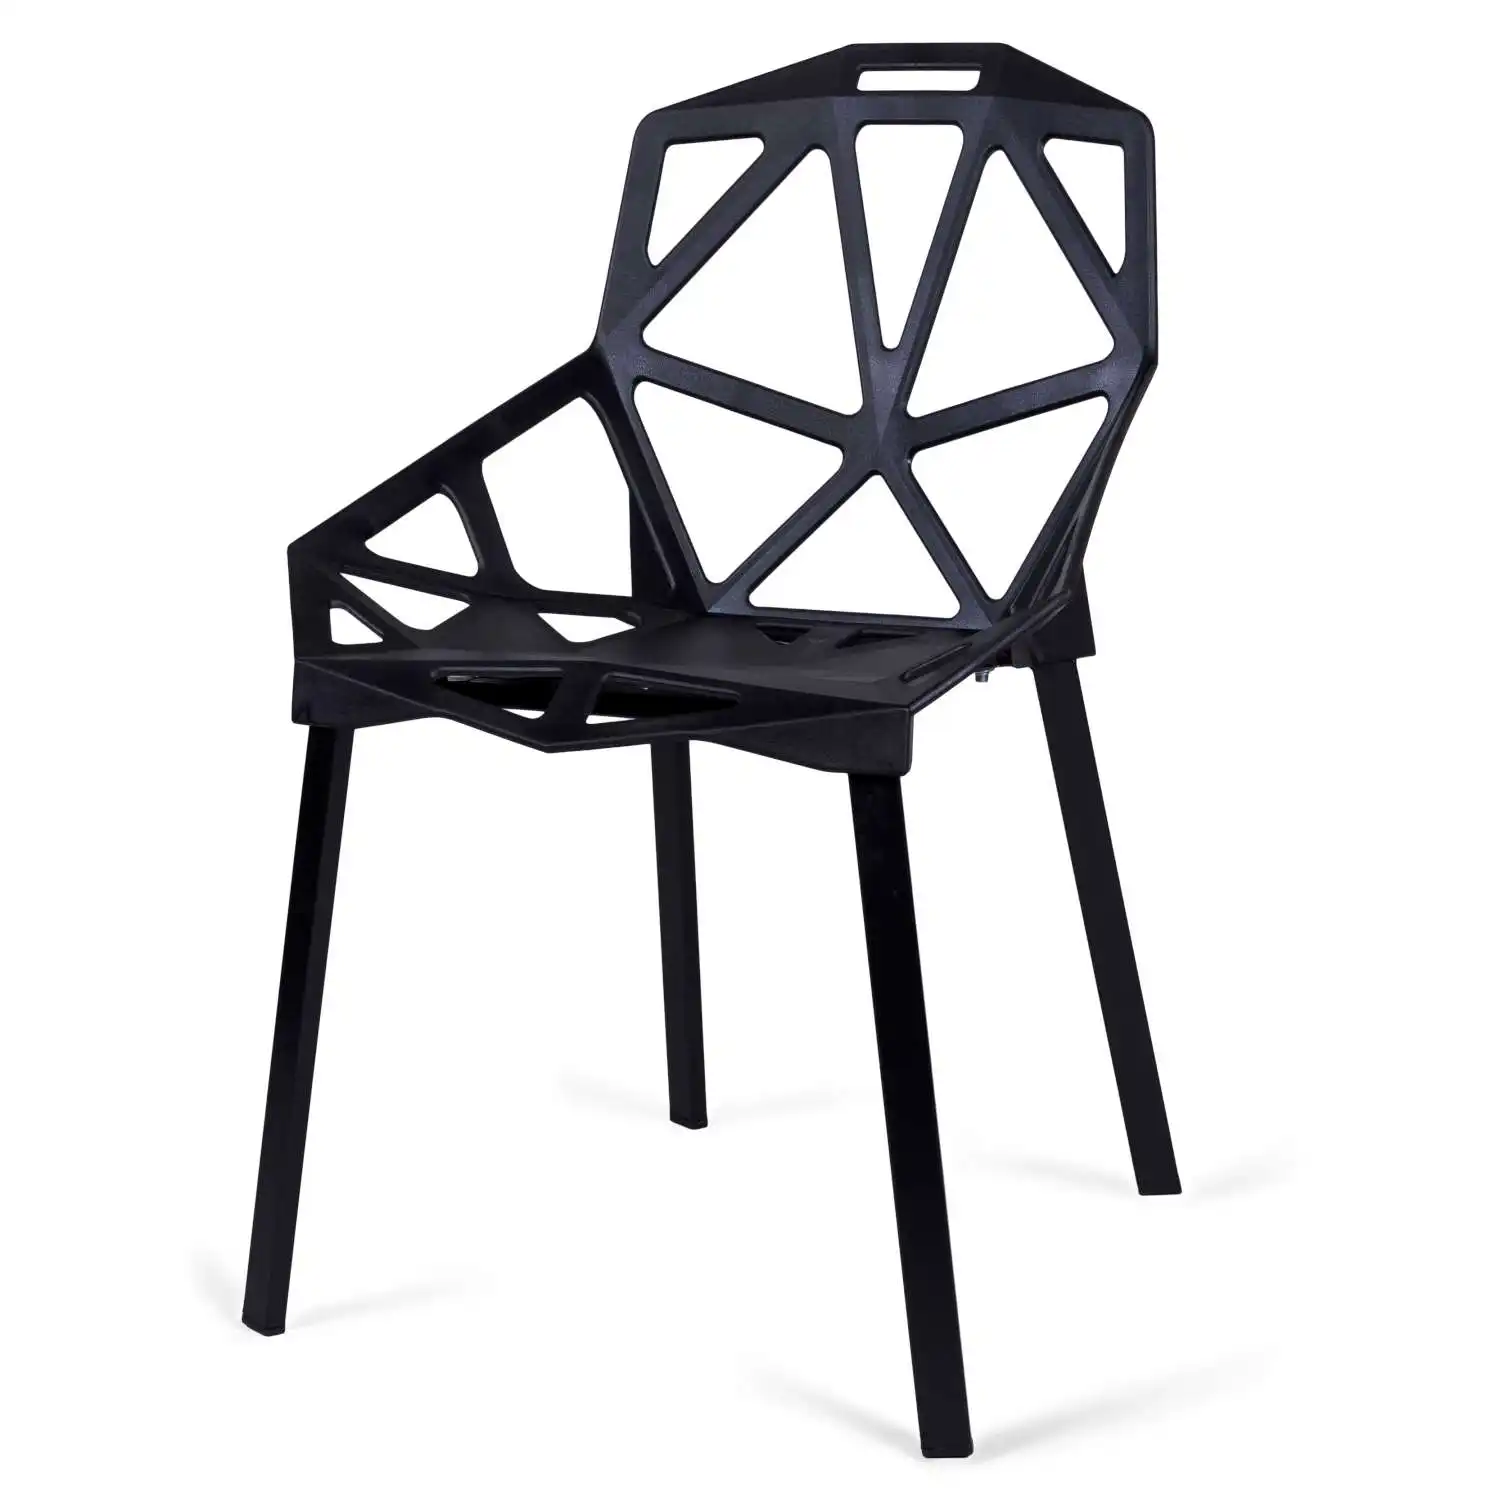 Moderno pp plástico baixo preço dinning quarto cadeiras luxo commerical mobiliário recepção cadeira